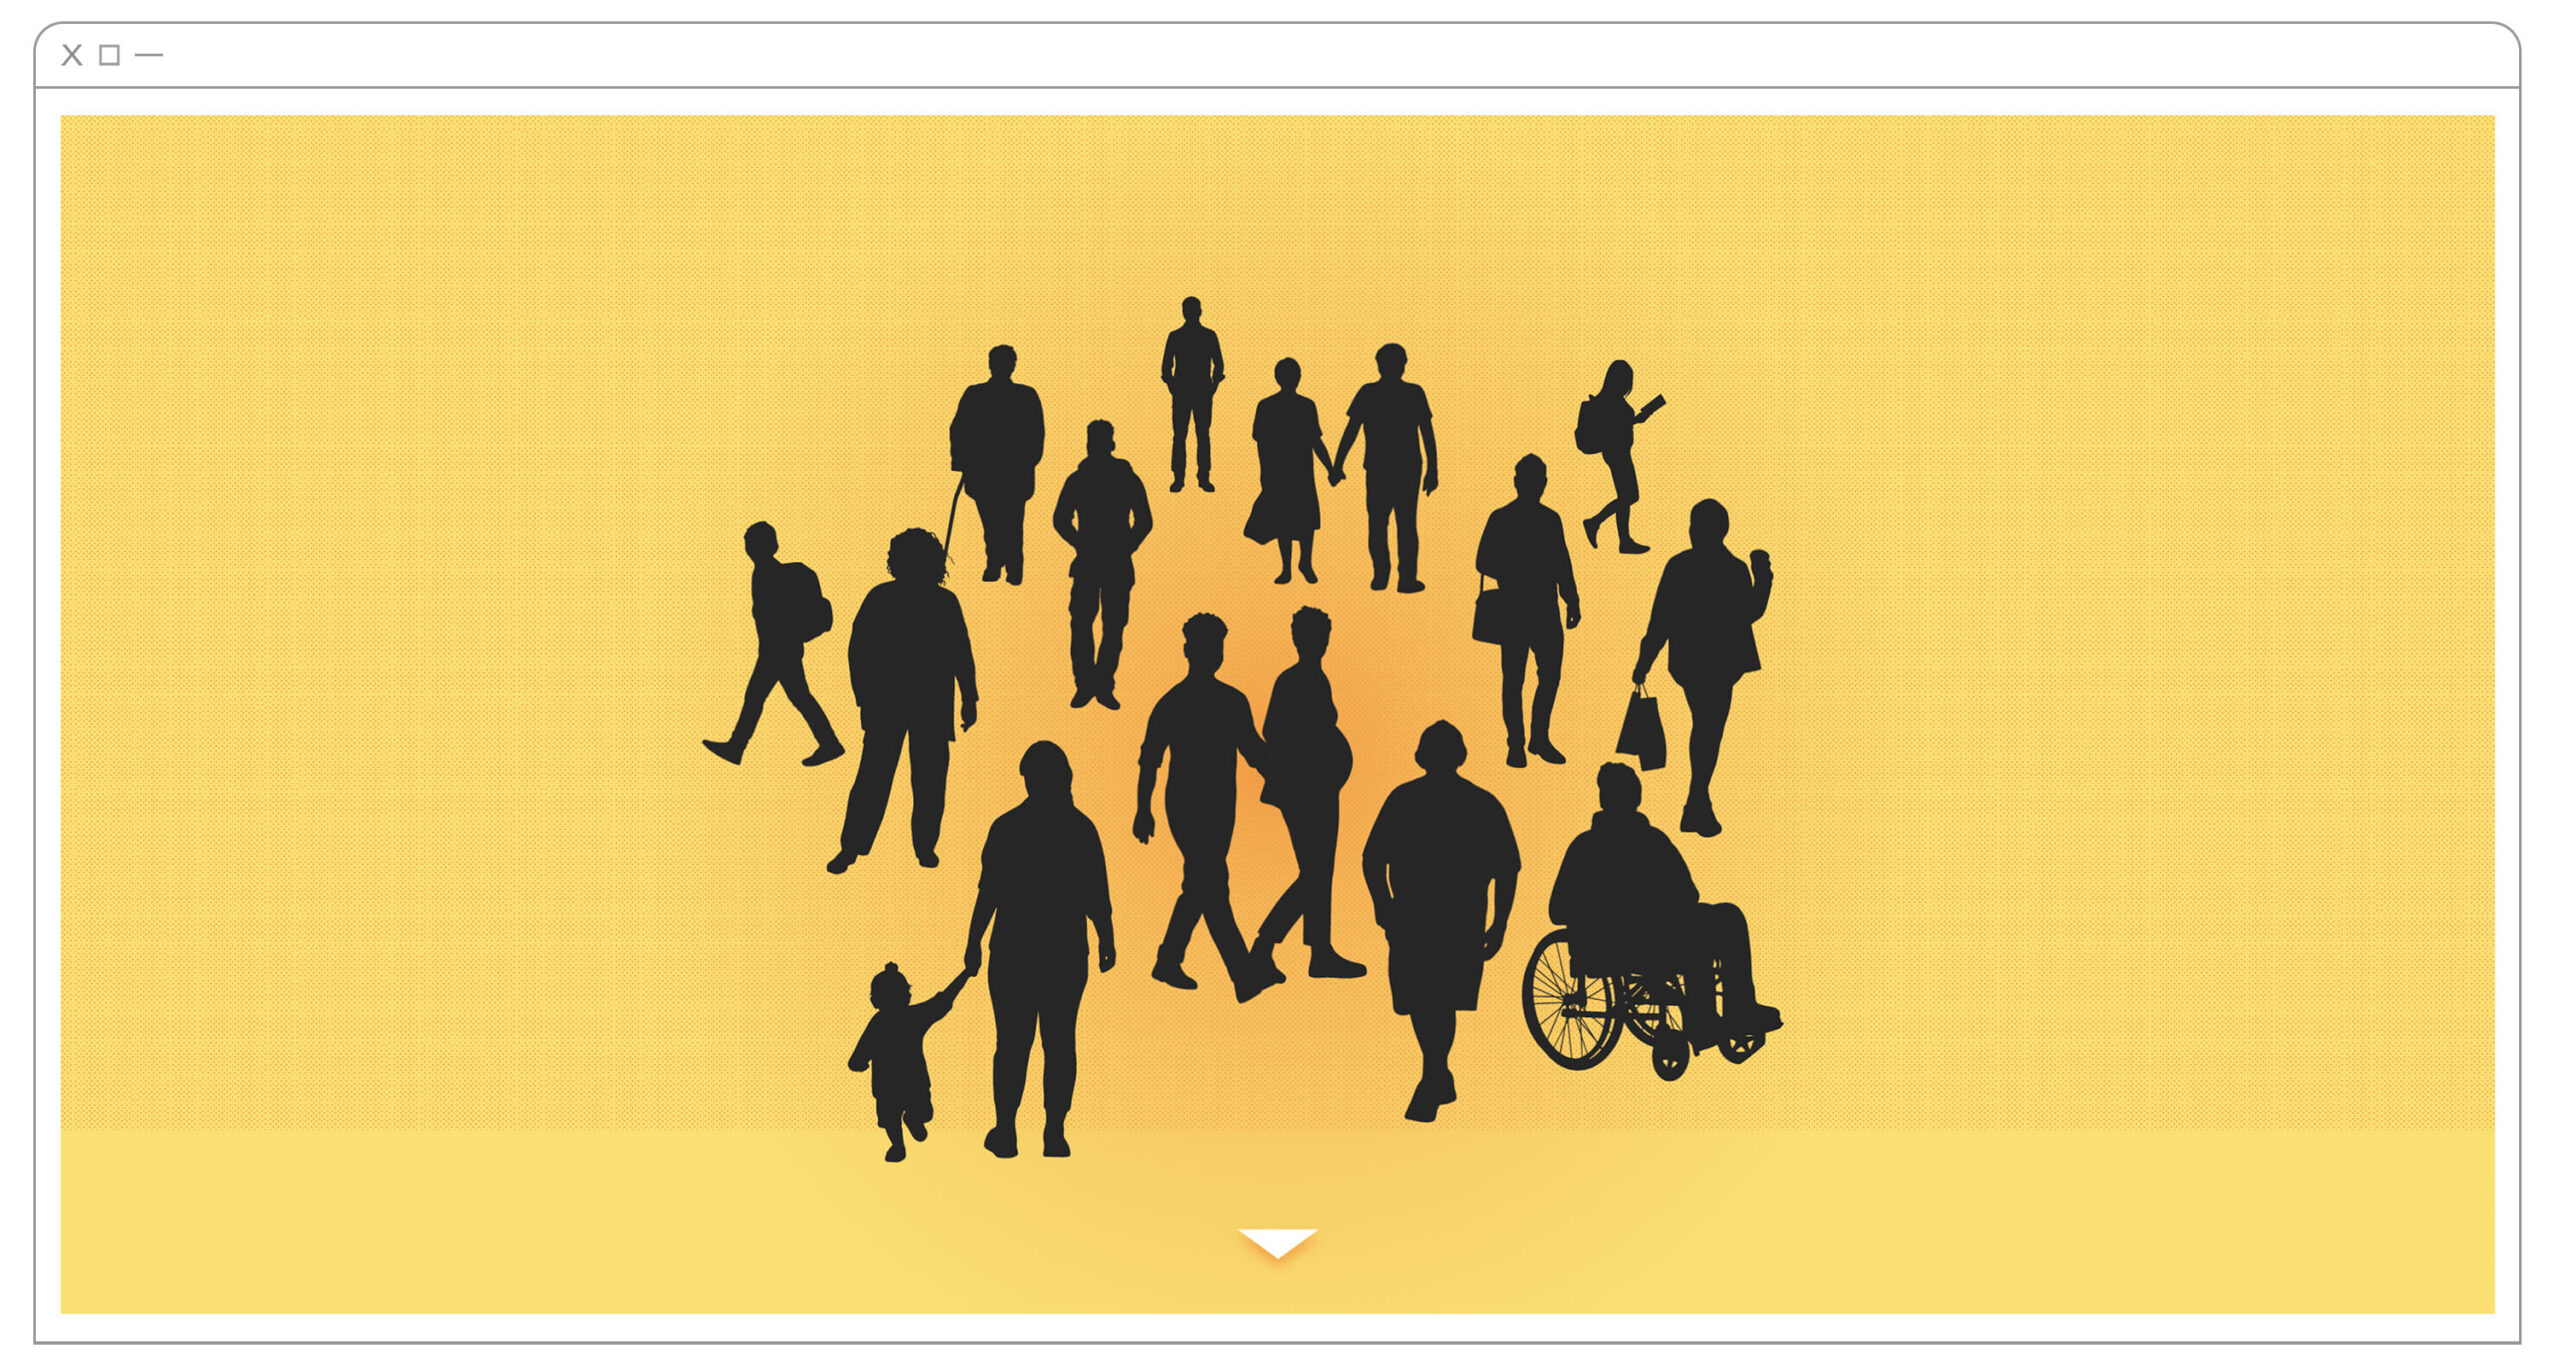 15 personnes sont représentées sous la forme de silhouettes noires groupées sur un fond jaune. On y devine, entre autres, un jeune écolier, plusieurs personnes agées, deux couples, une femme enceinte, un homme en fauteuil roulant, un enfant en bas âge et plusieurs personnes au travail ou aux études.